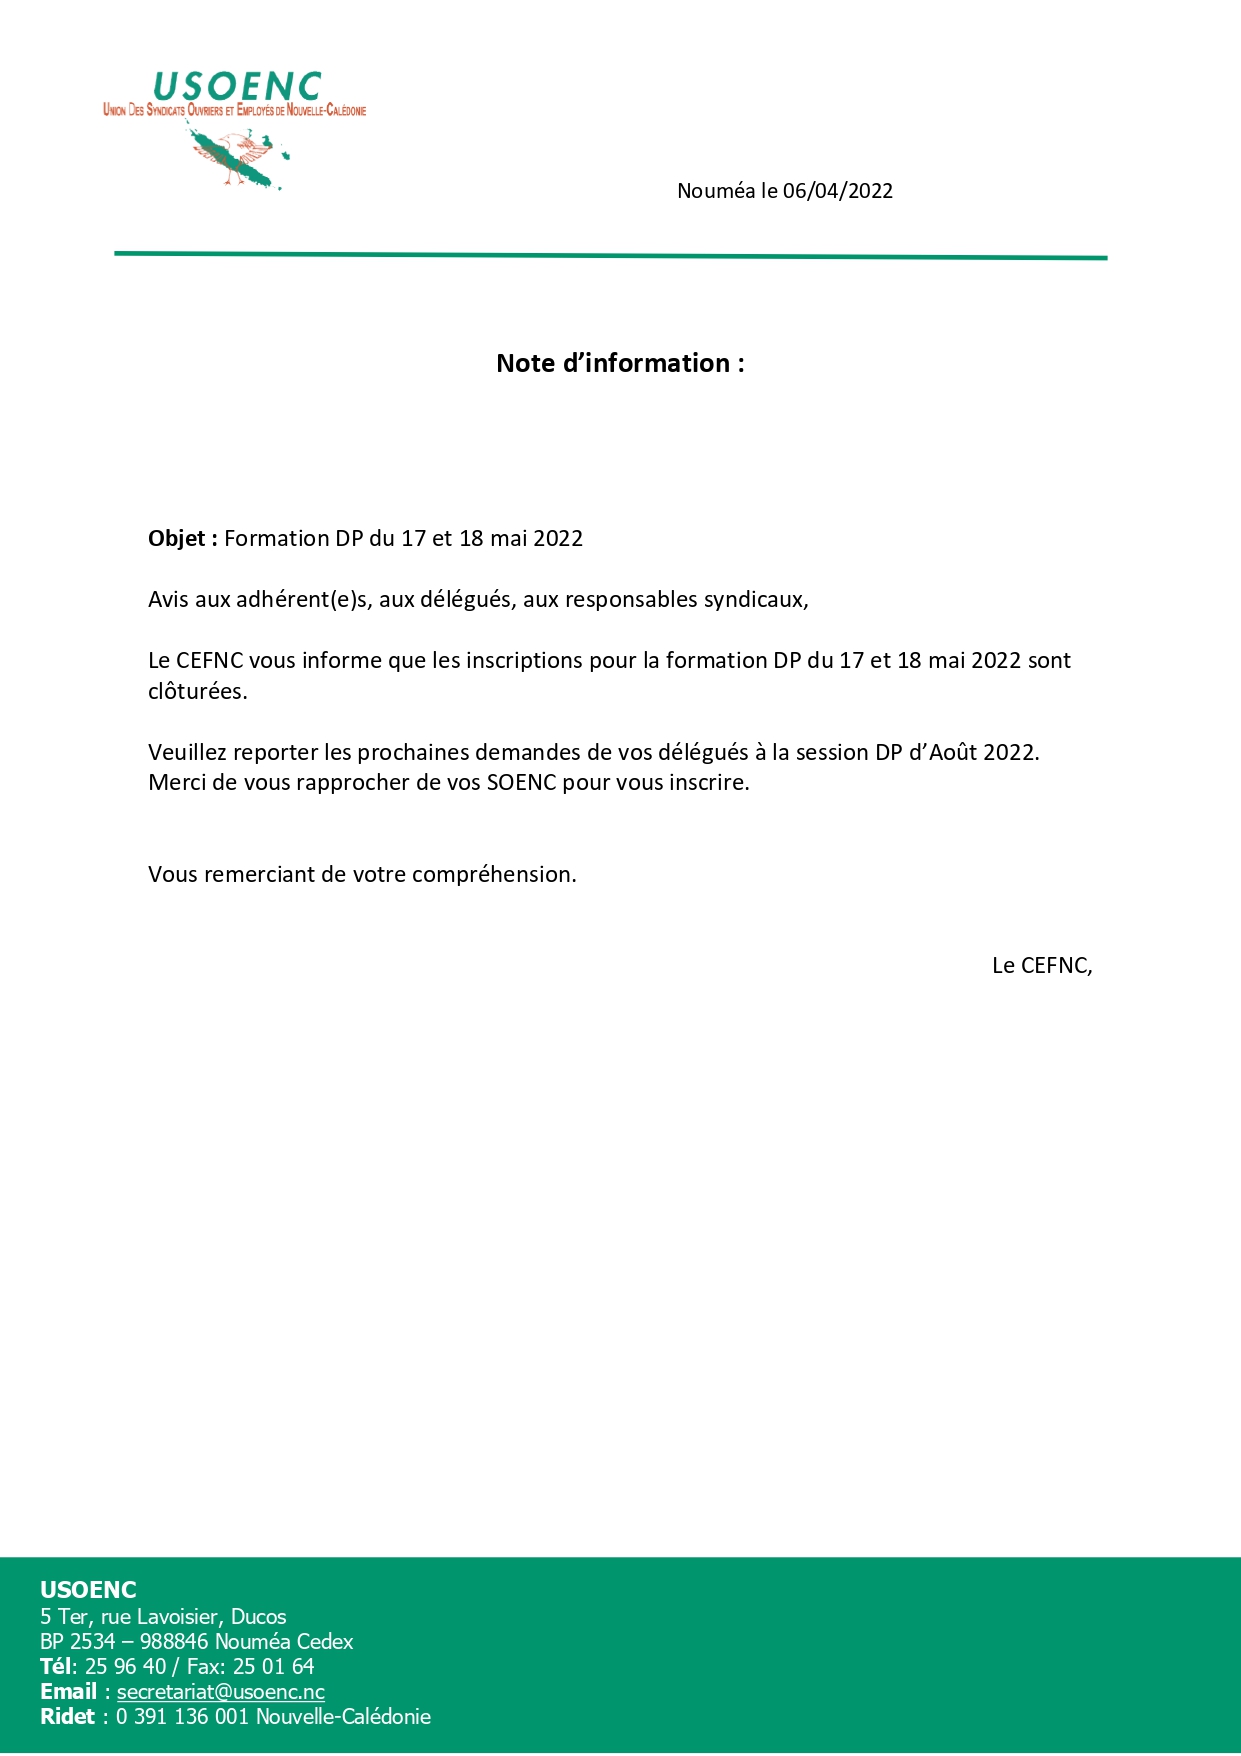 Note d’information : Formation DP du 17 et 18 mai 2022